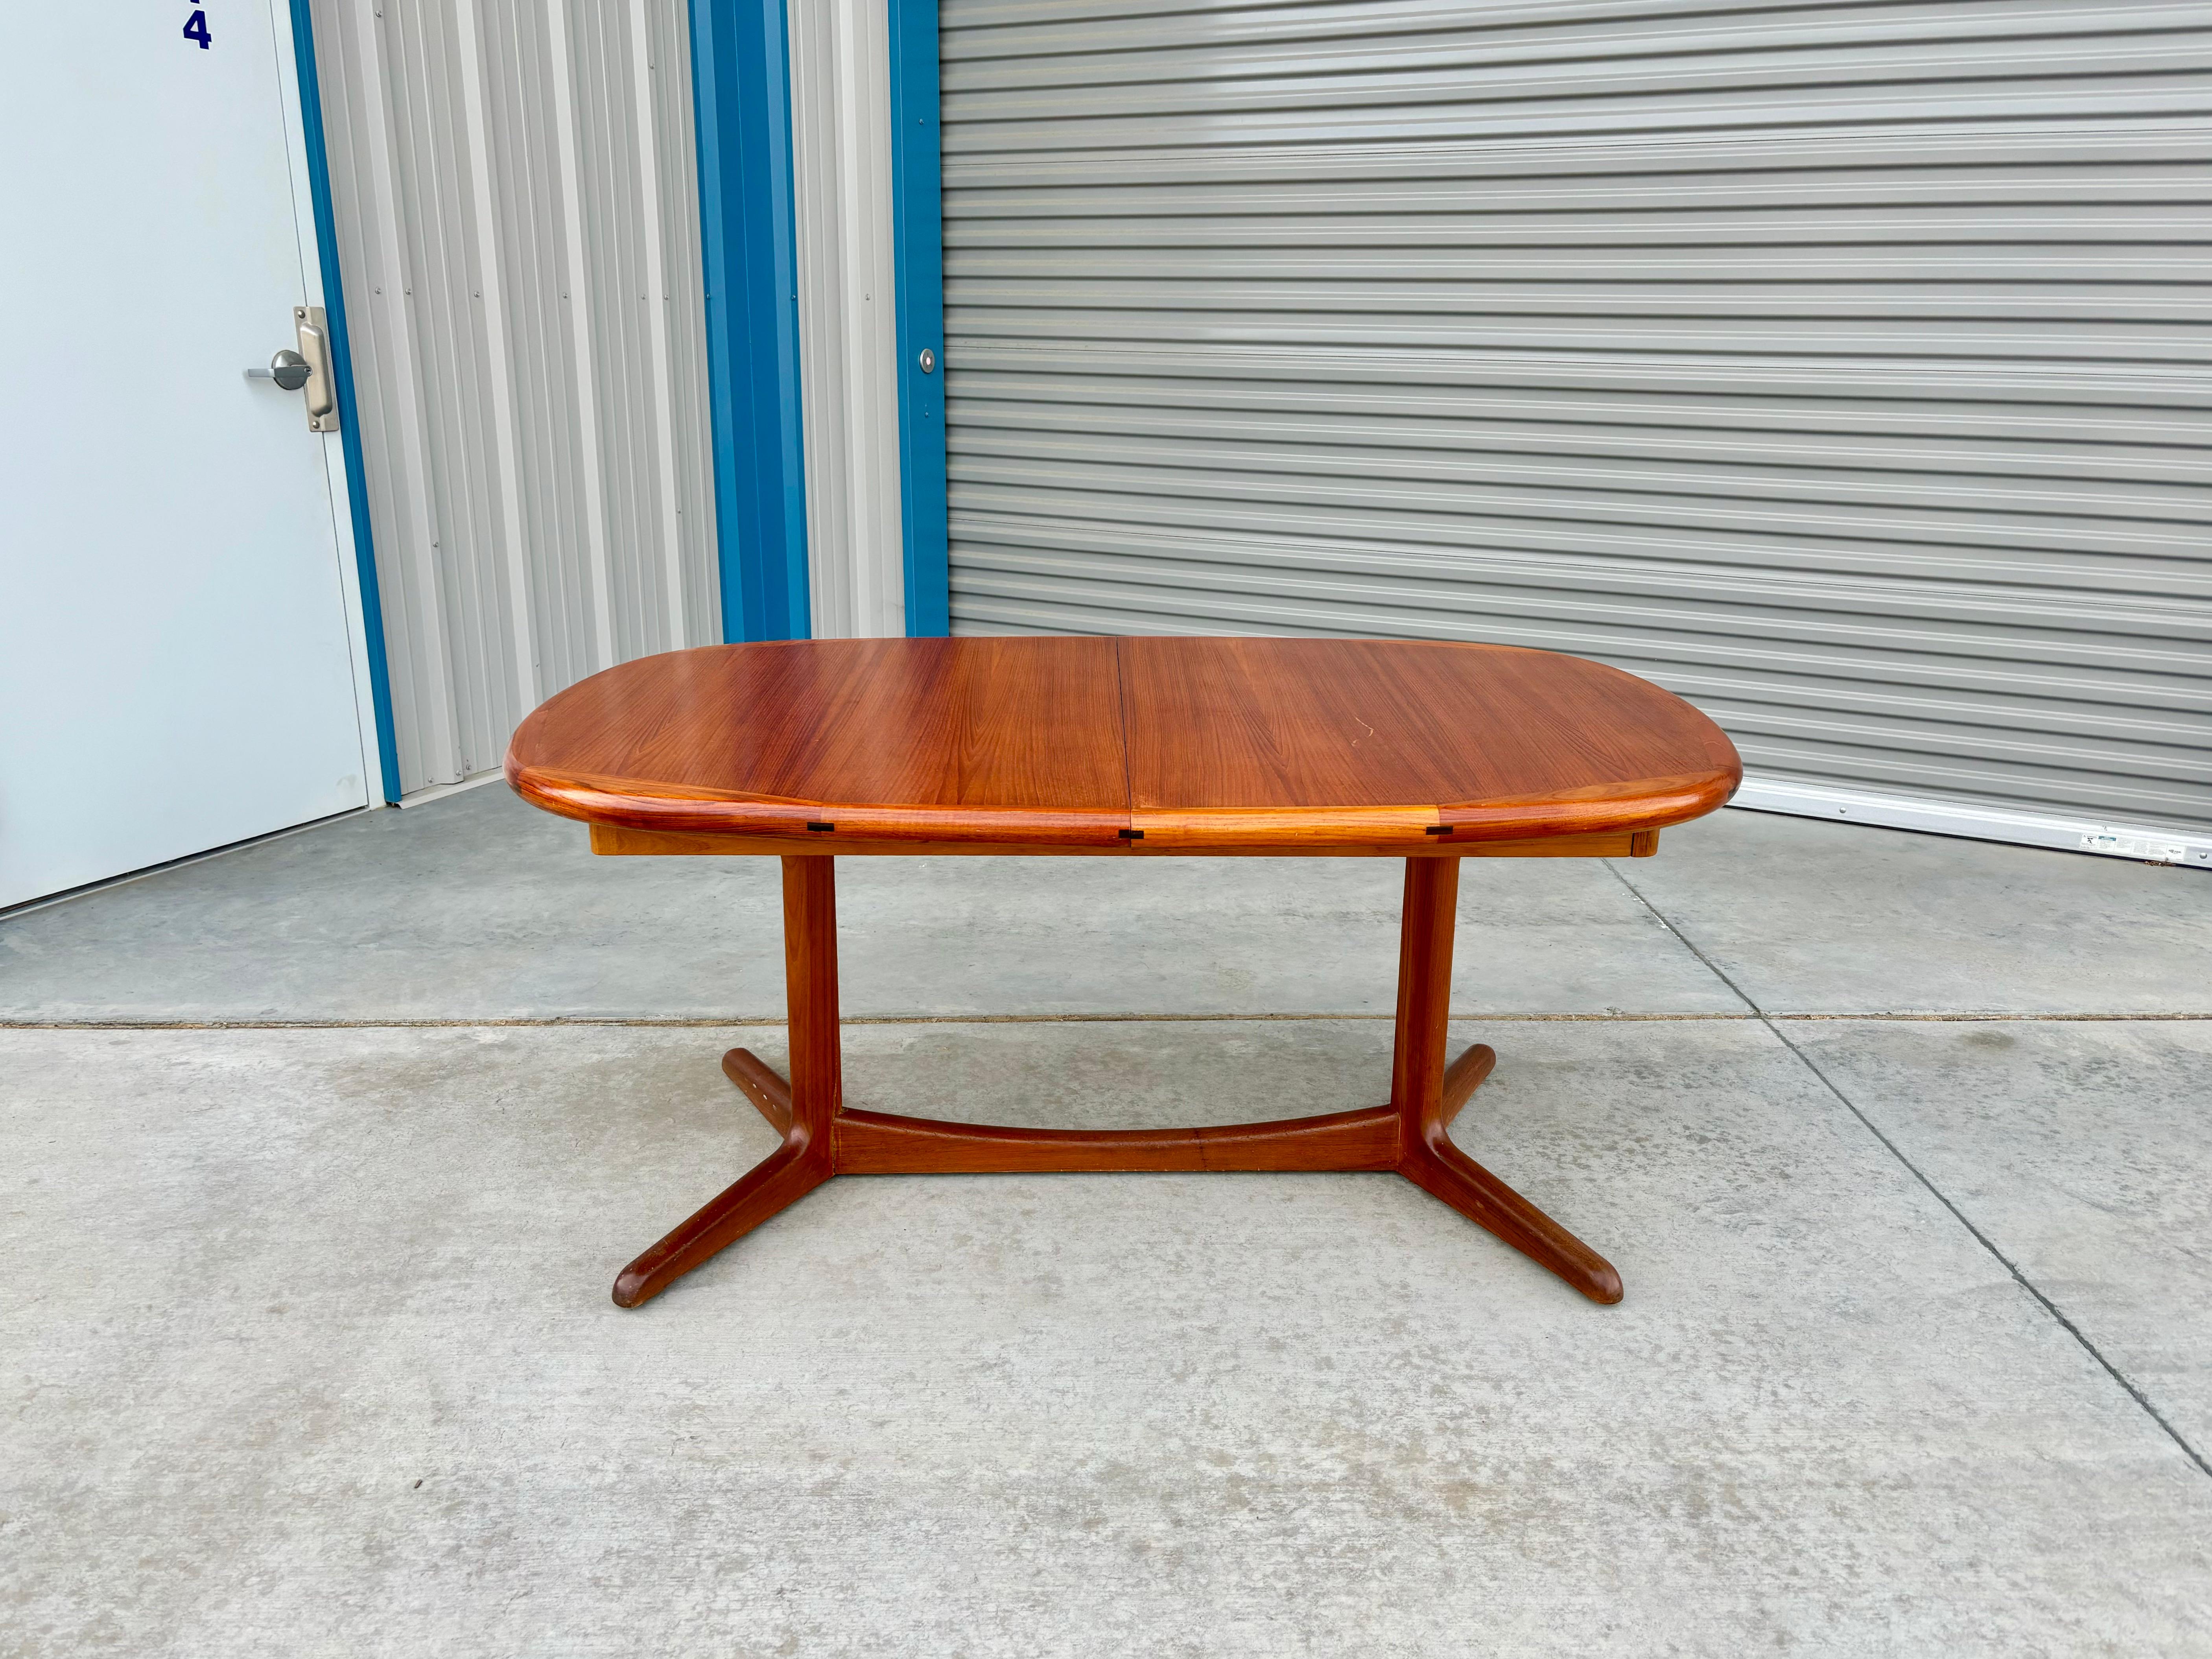 Moderner dänischer Esstisch aus Teakholz, entworfen und hergestellt in Dänemark in den 1960er Jahren. Der Tisch besteht aus einem schlanken Teakholzrahmen, der auf einem eleganten Teakholzsockel ruht und ein perfektes Gleichgewicht zwischen Form und